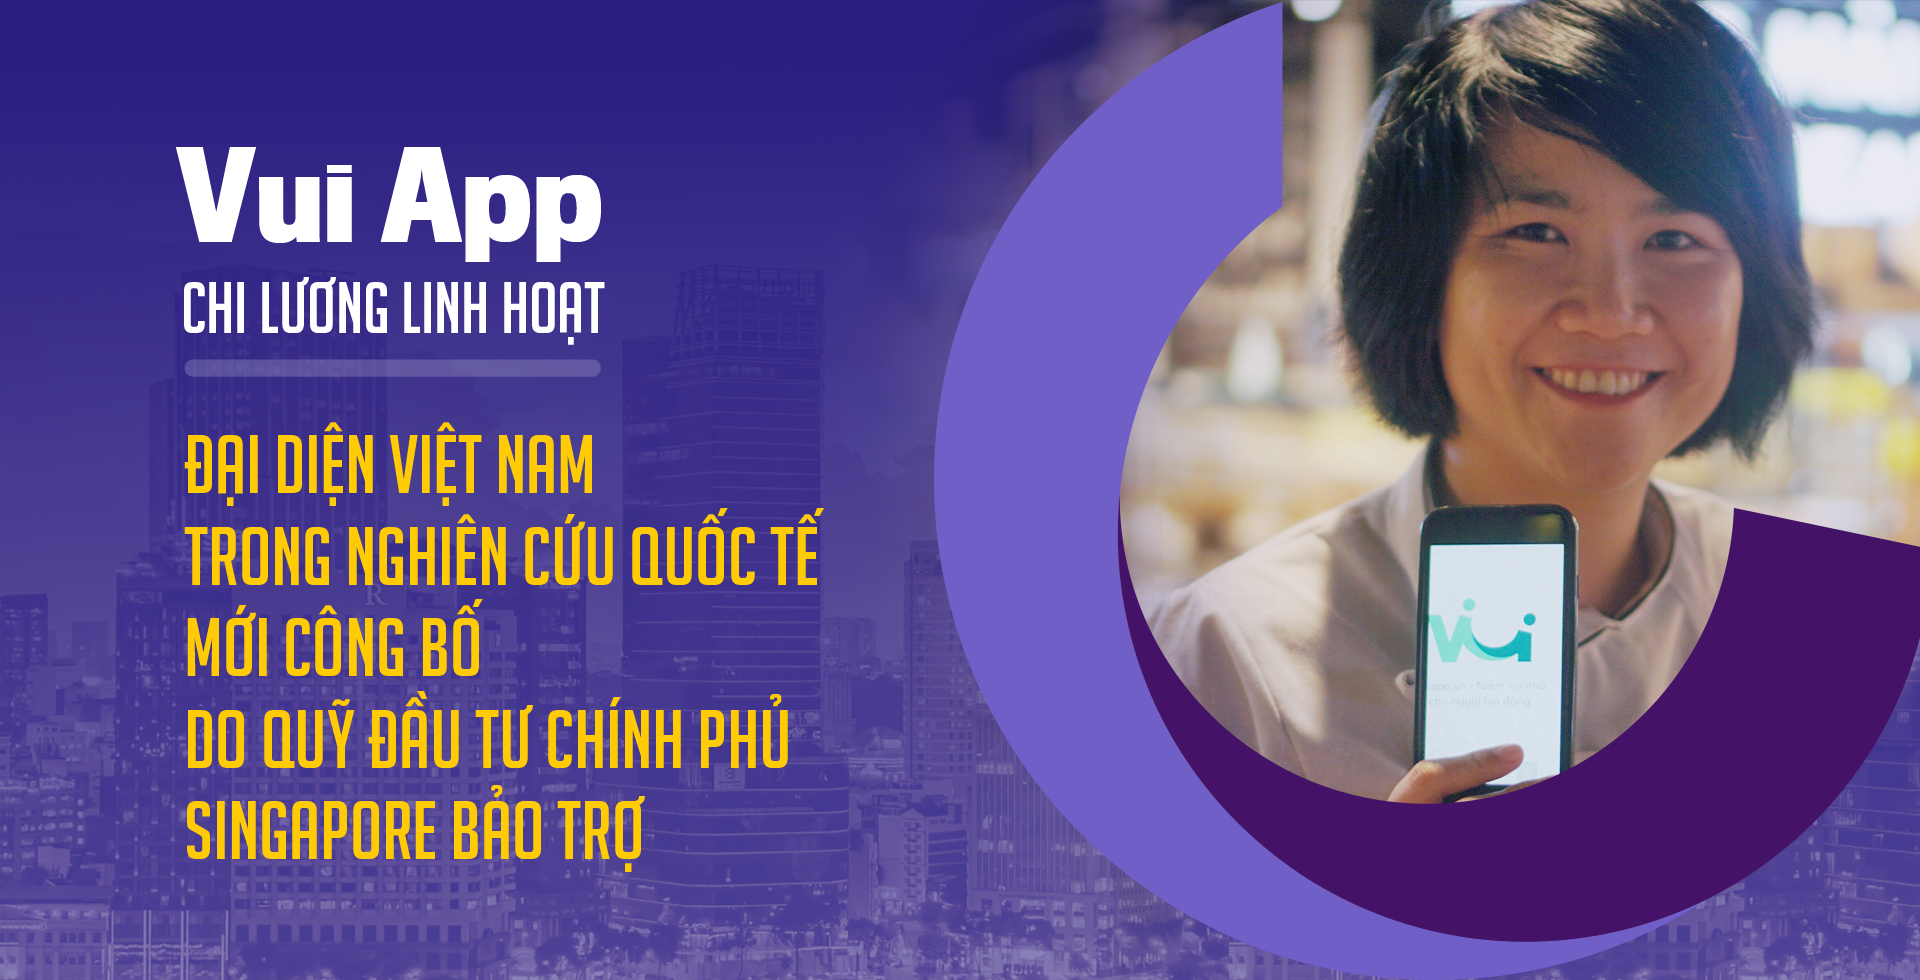 Vui App - Chi lương Linh hoạt đại diện Việt Nam trong nghiên cứu quốc tế mới công bố do Quỹ đầu tư Chính phủ Singapore bảo trợ  - Ảnh 1